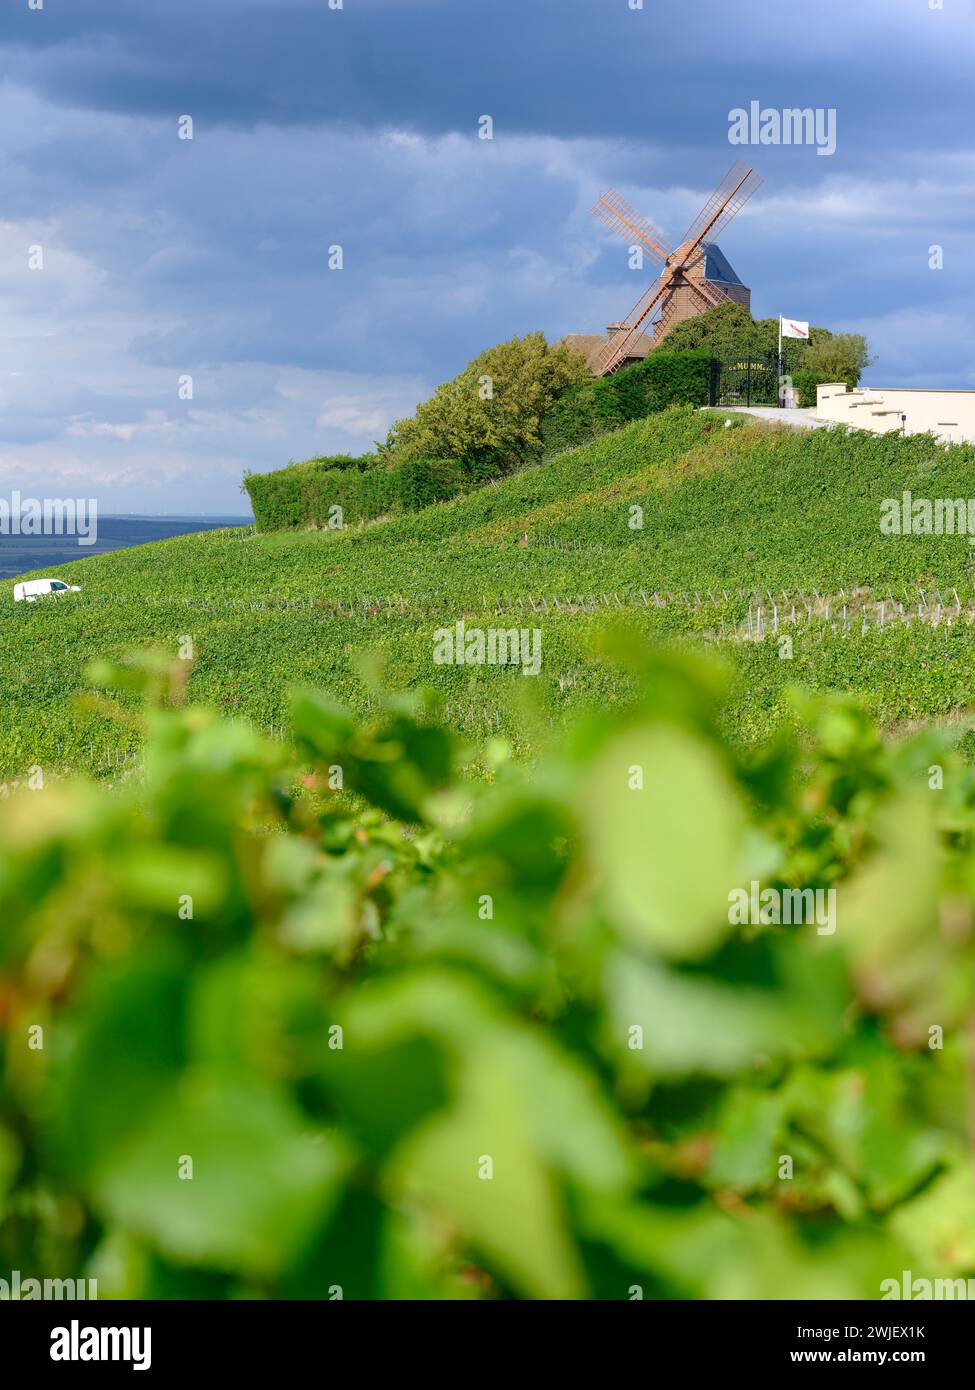 Verzenay (nord-ouest de la France) : moulin à vent et la maison de Champagne G.H Mumm vue depuis un vignoble Banque D'Images